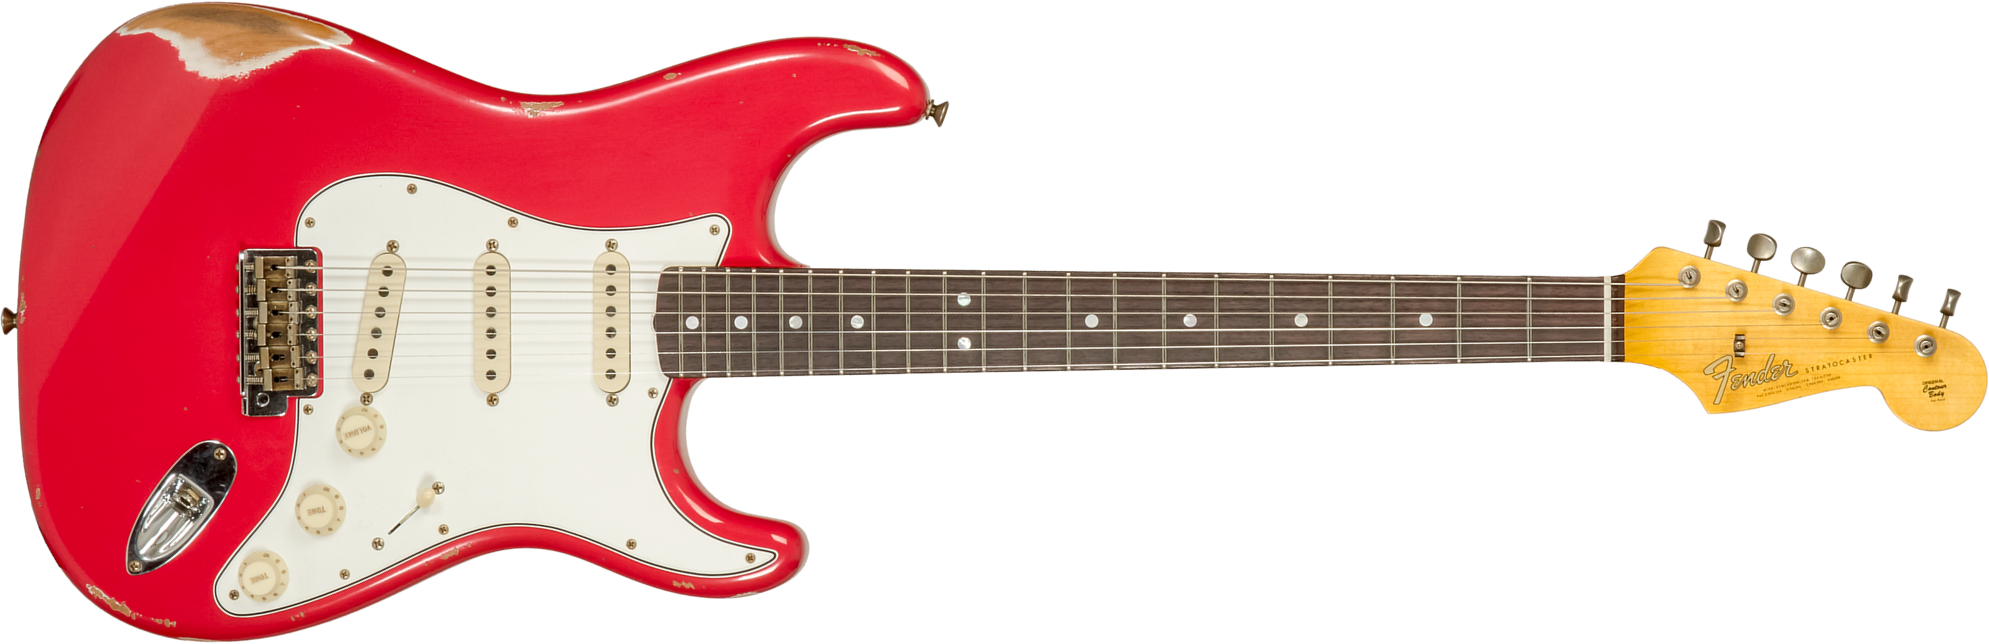 Fender Custom Shop Strat Late 1964 Trem 3s Rw #cz575557 - Relic Aged Fiesta Red - Elektrische gitaar in Str-vorm - Main picture